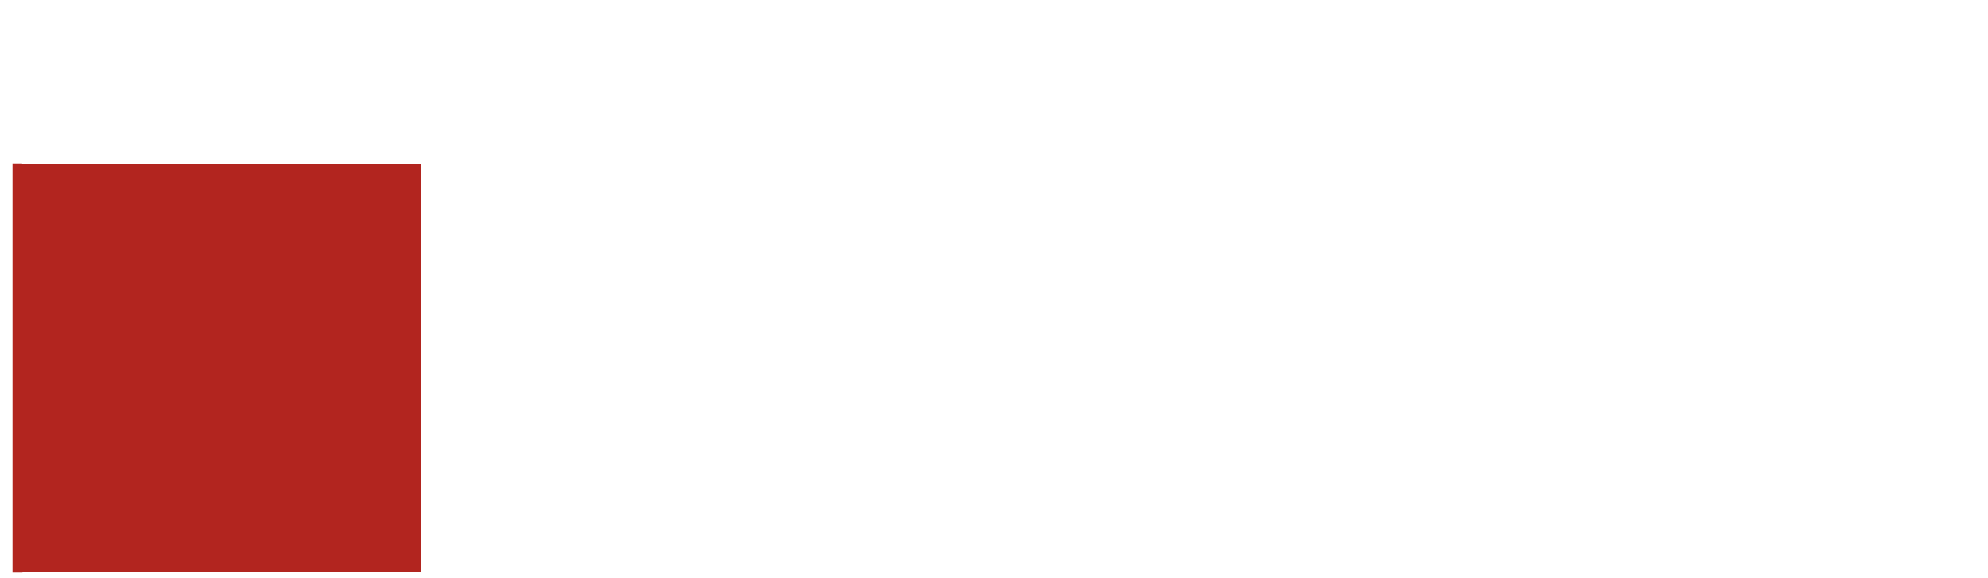 Logo CGIL Bergamo